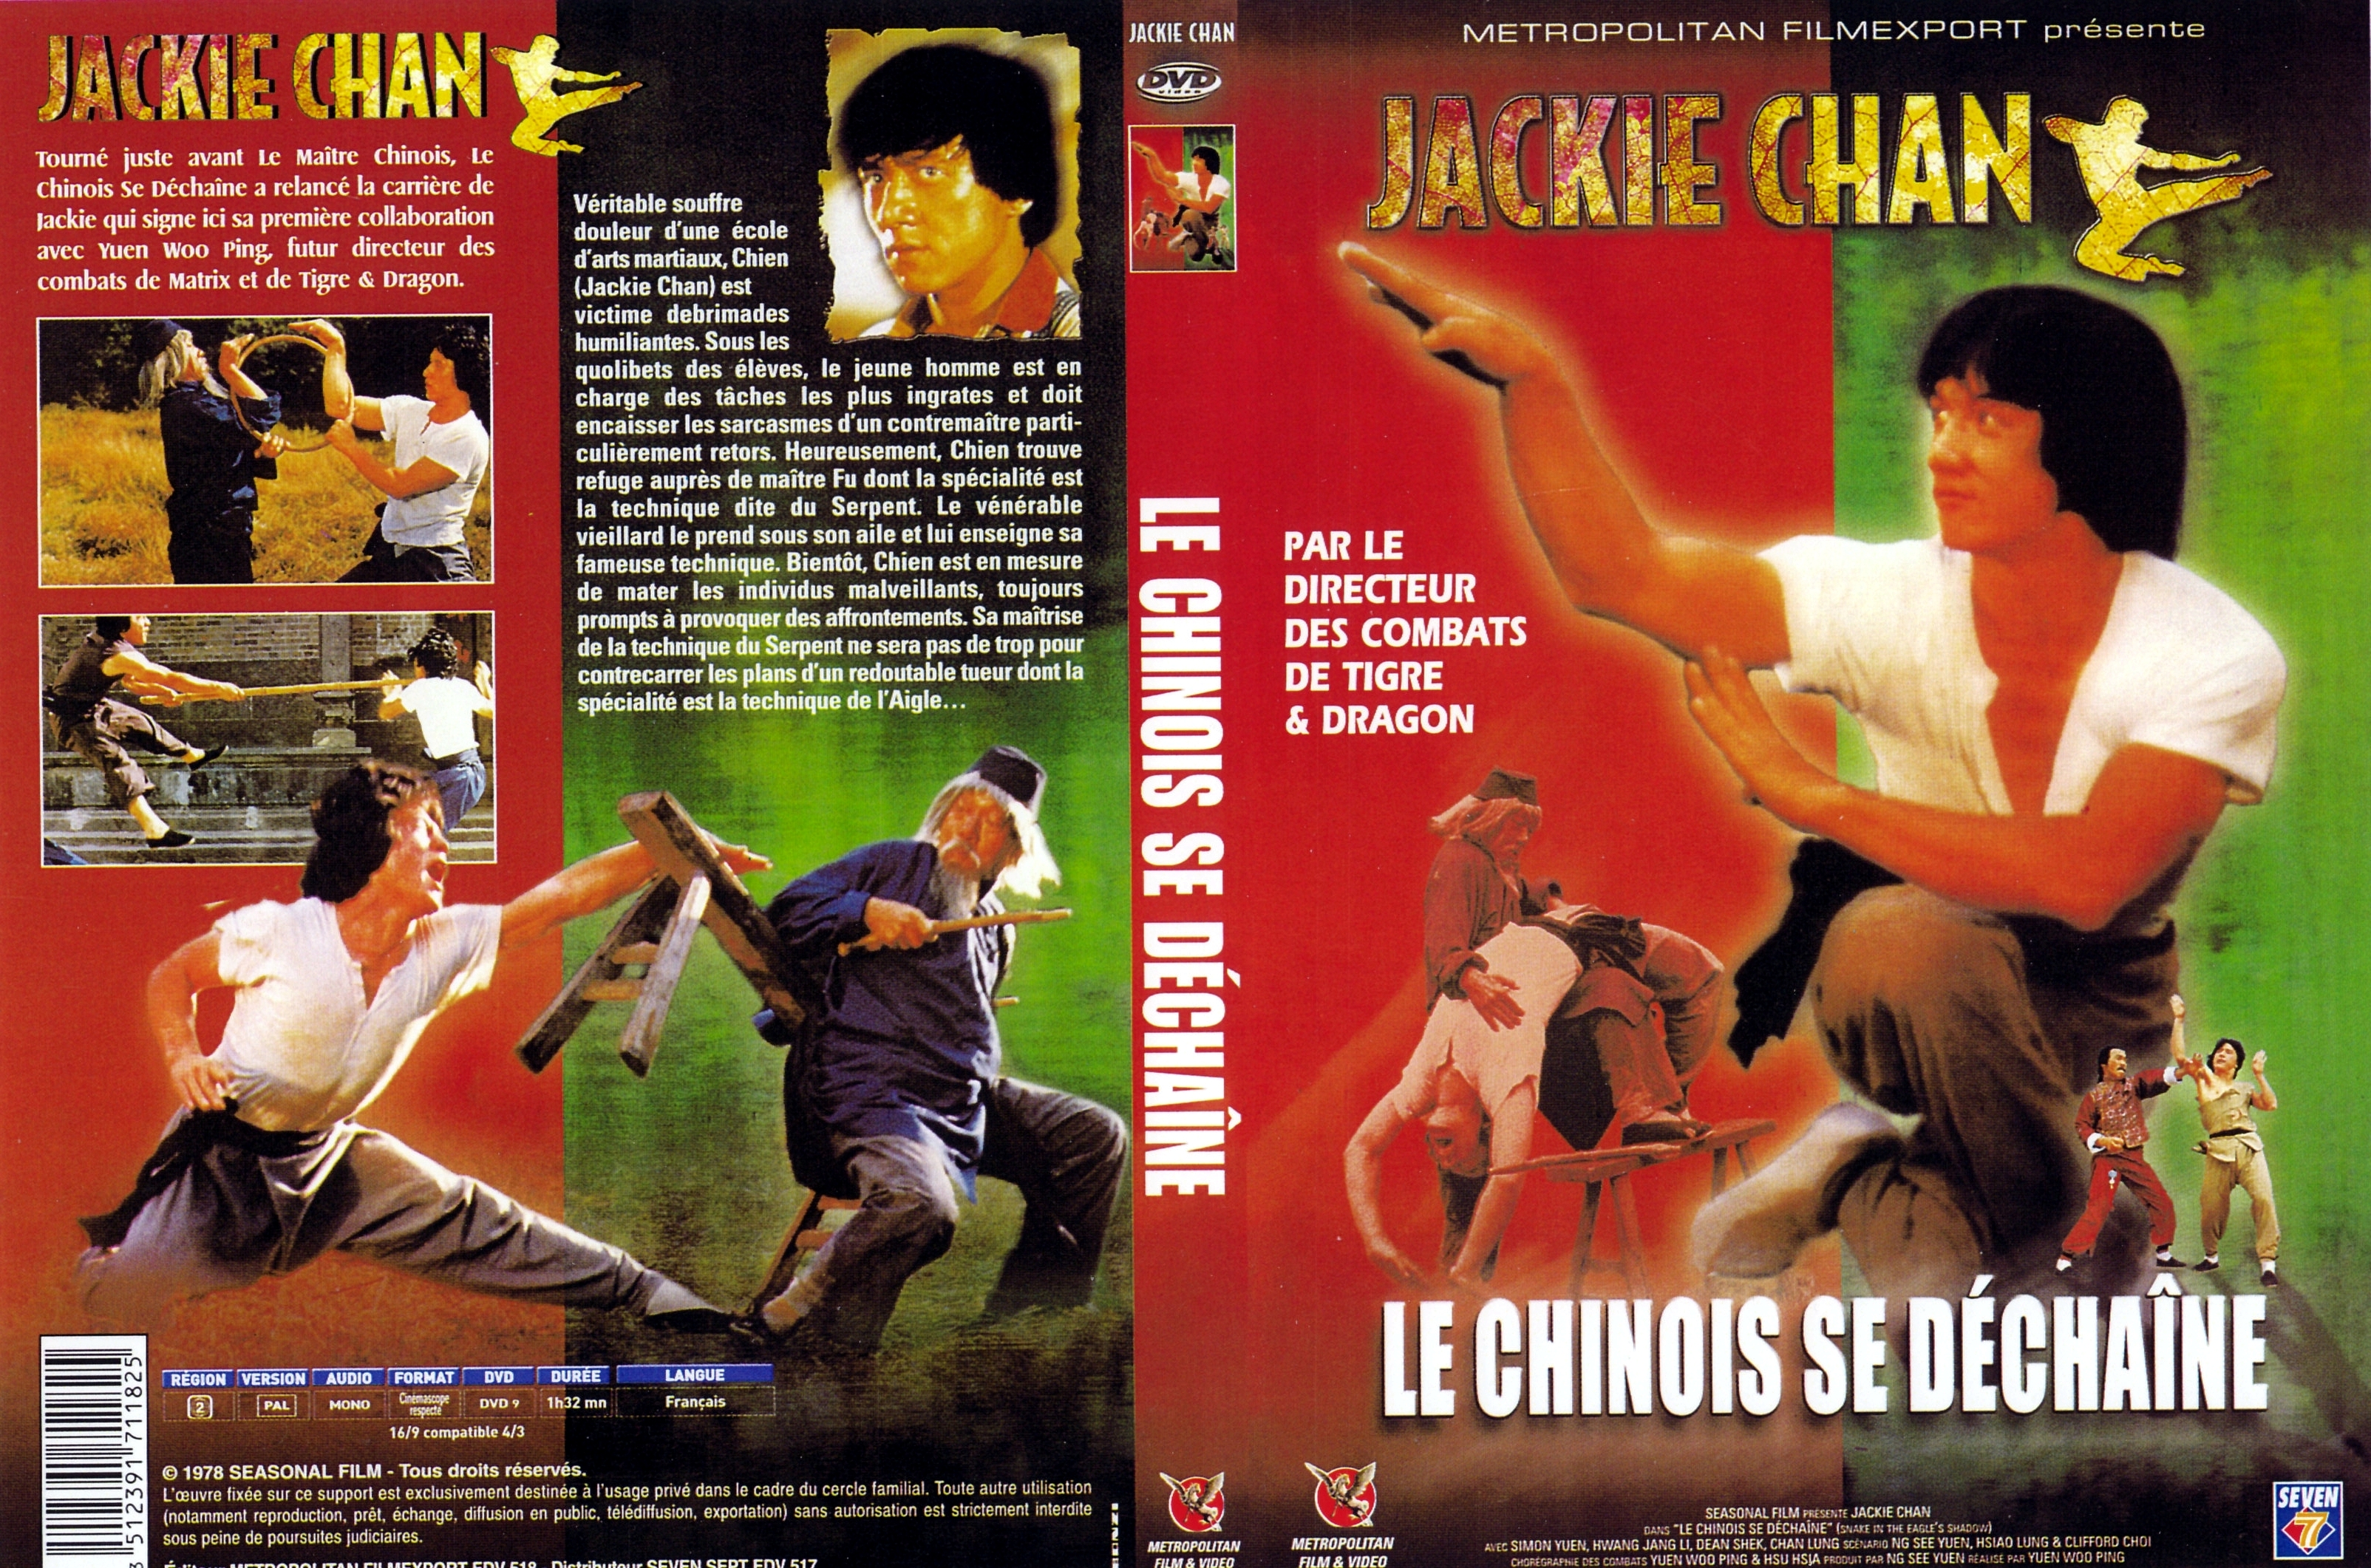 Jaquette DVD Le chinois se dechaine v2